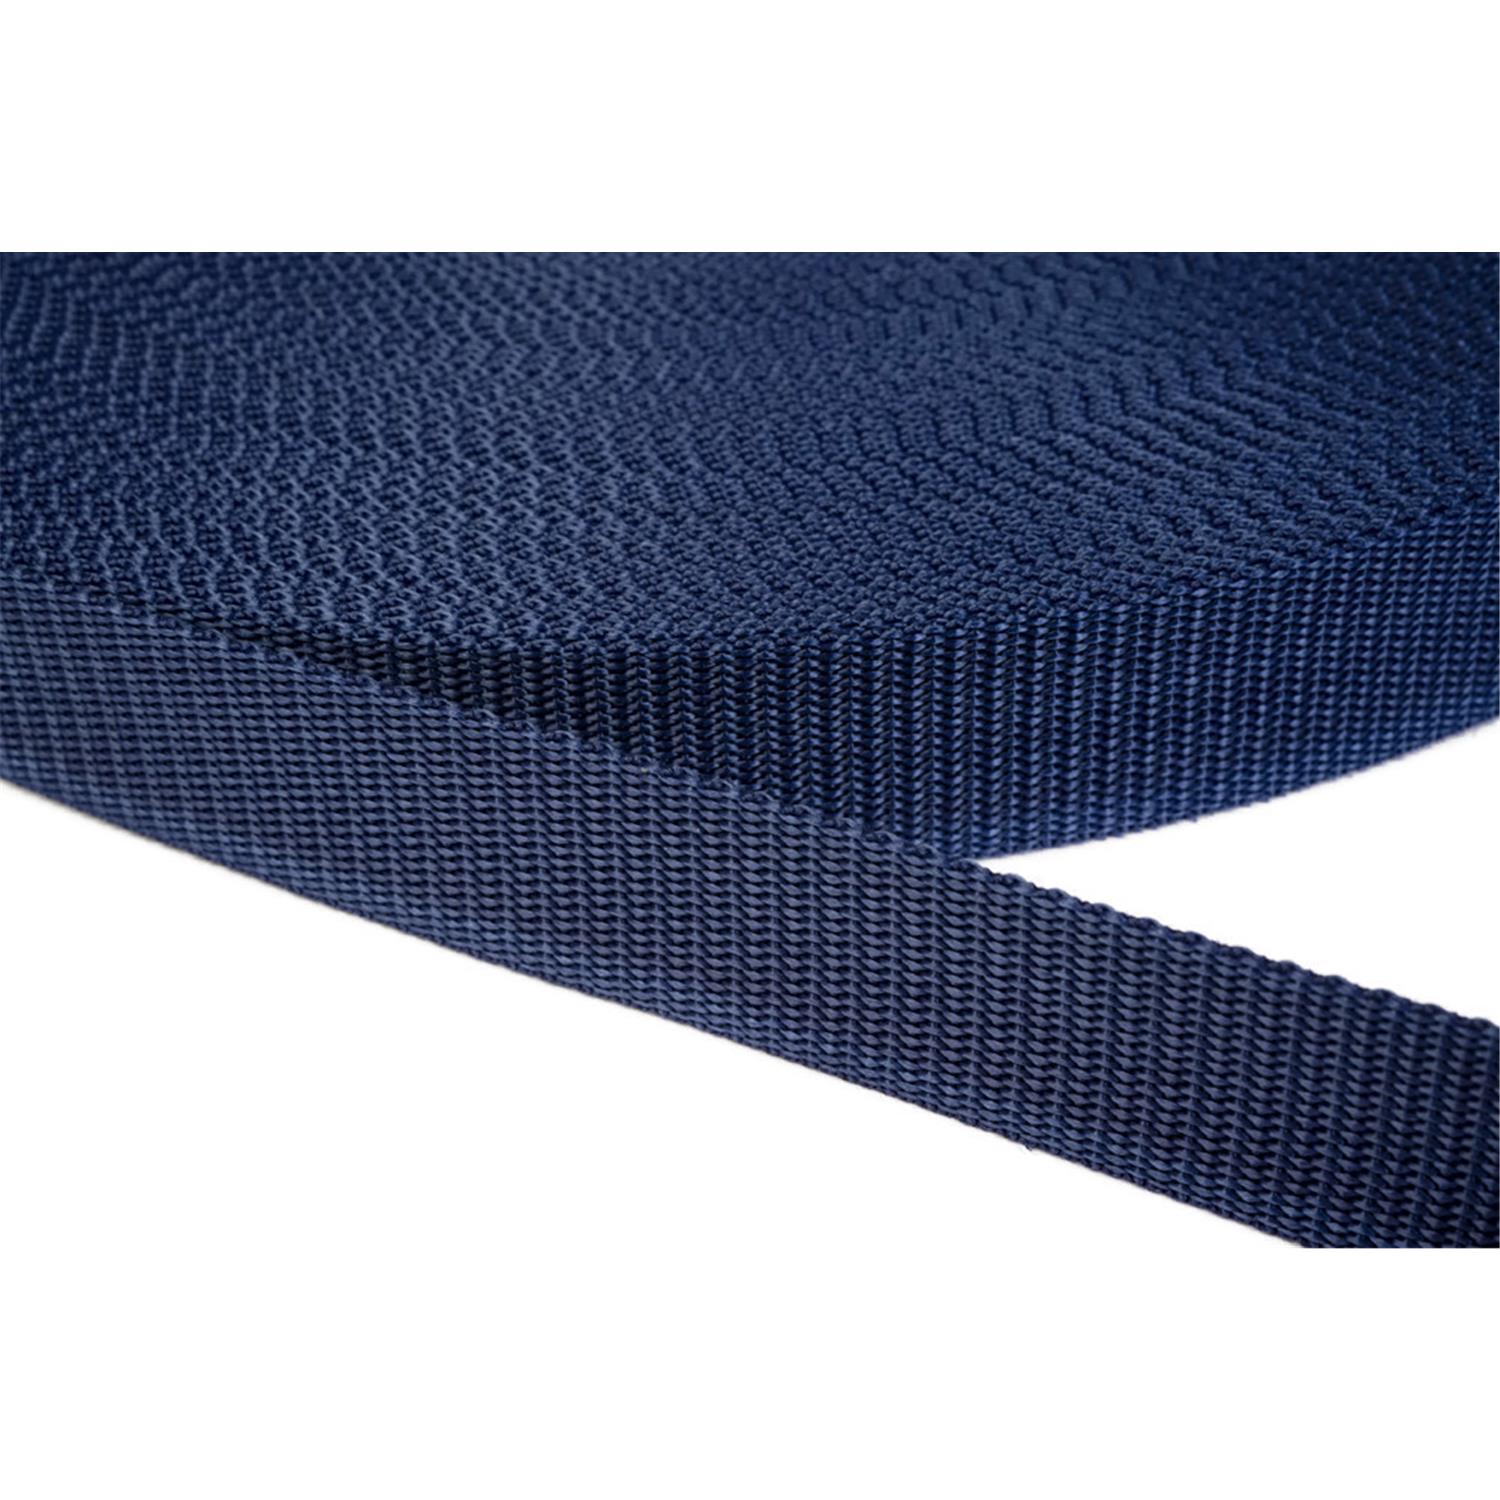 Gurtband 50mm breit aus Polypropylen in 41 Farben 27 - dunkelblau 6 Meter